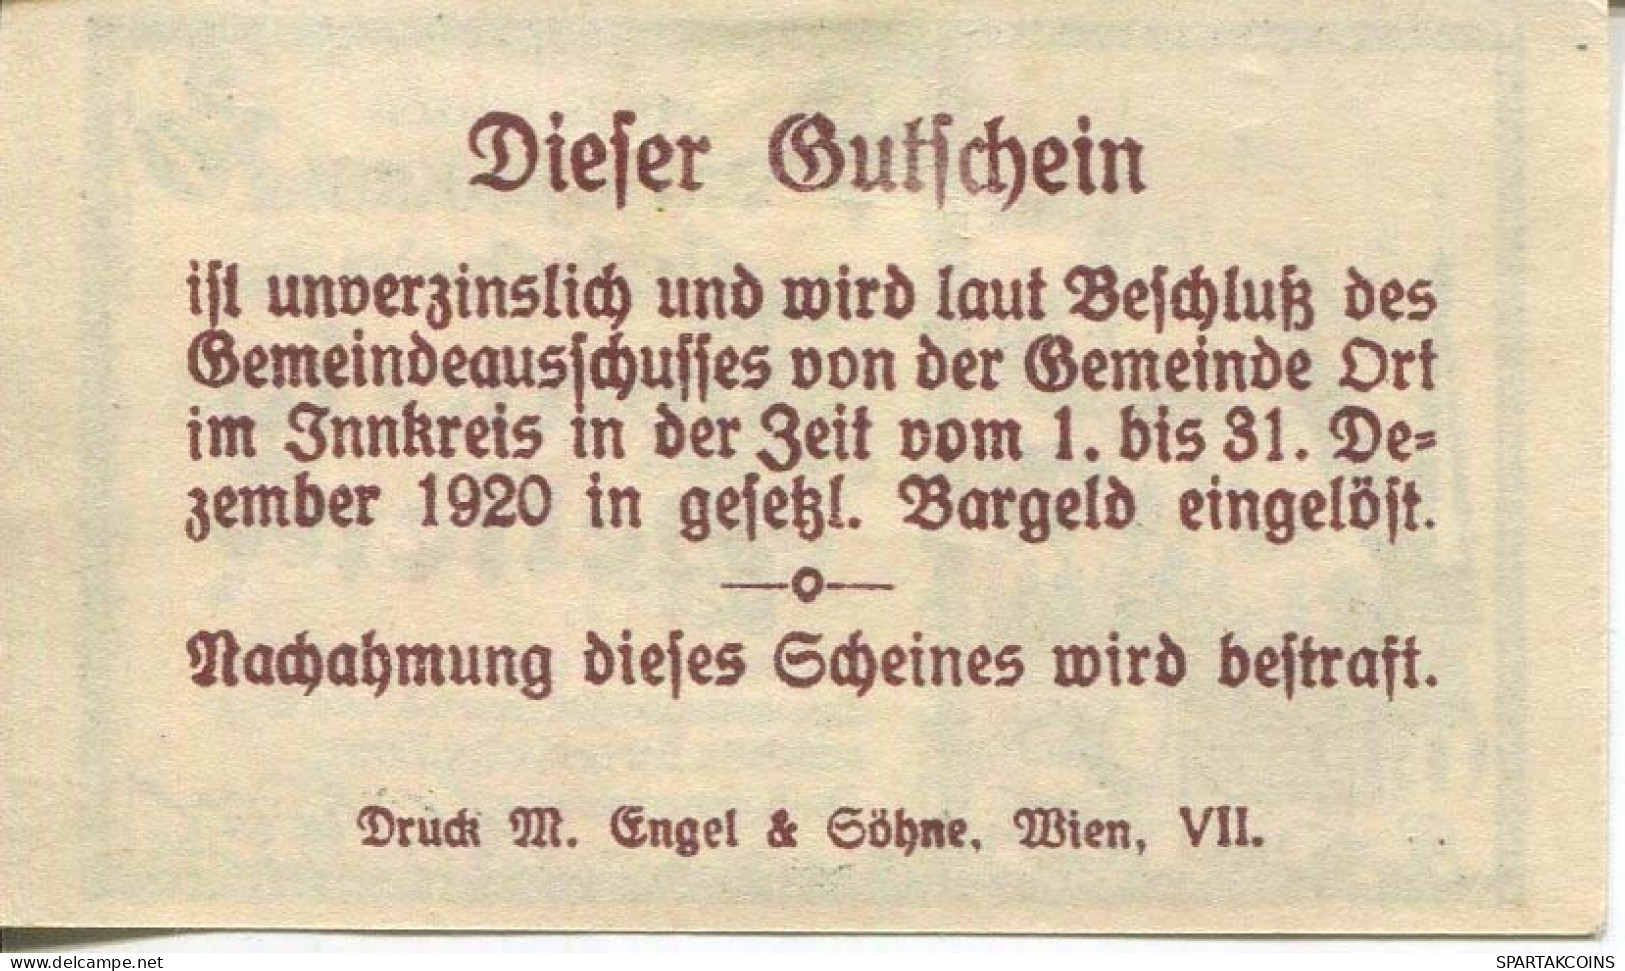 20 HELLER 1920 Stadt ORT IM INNKREIS Oberösterreich Österreich Notgeld Papiergeld Banknote #PL744 - Lokale Ausgaben